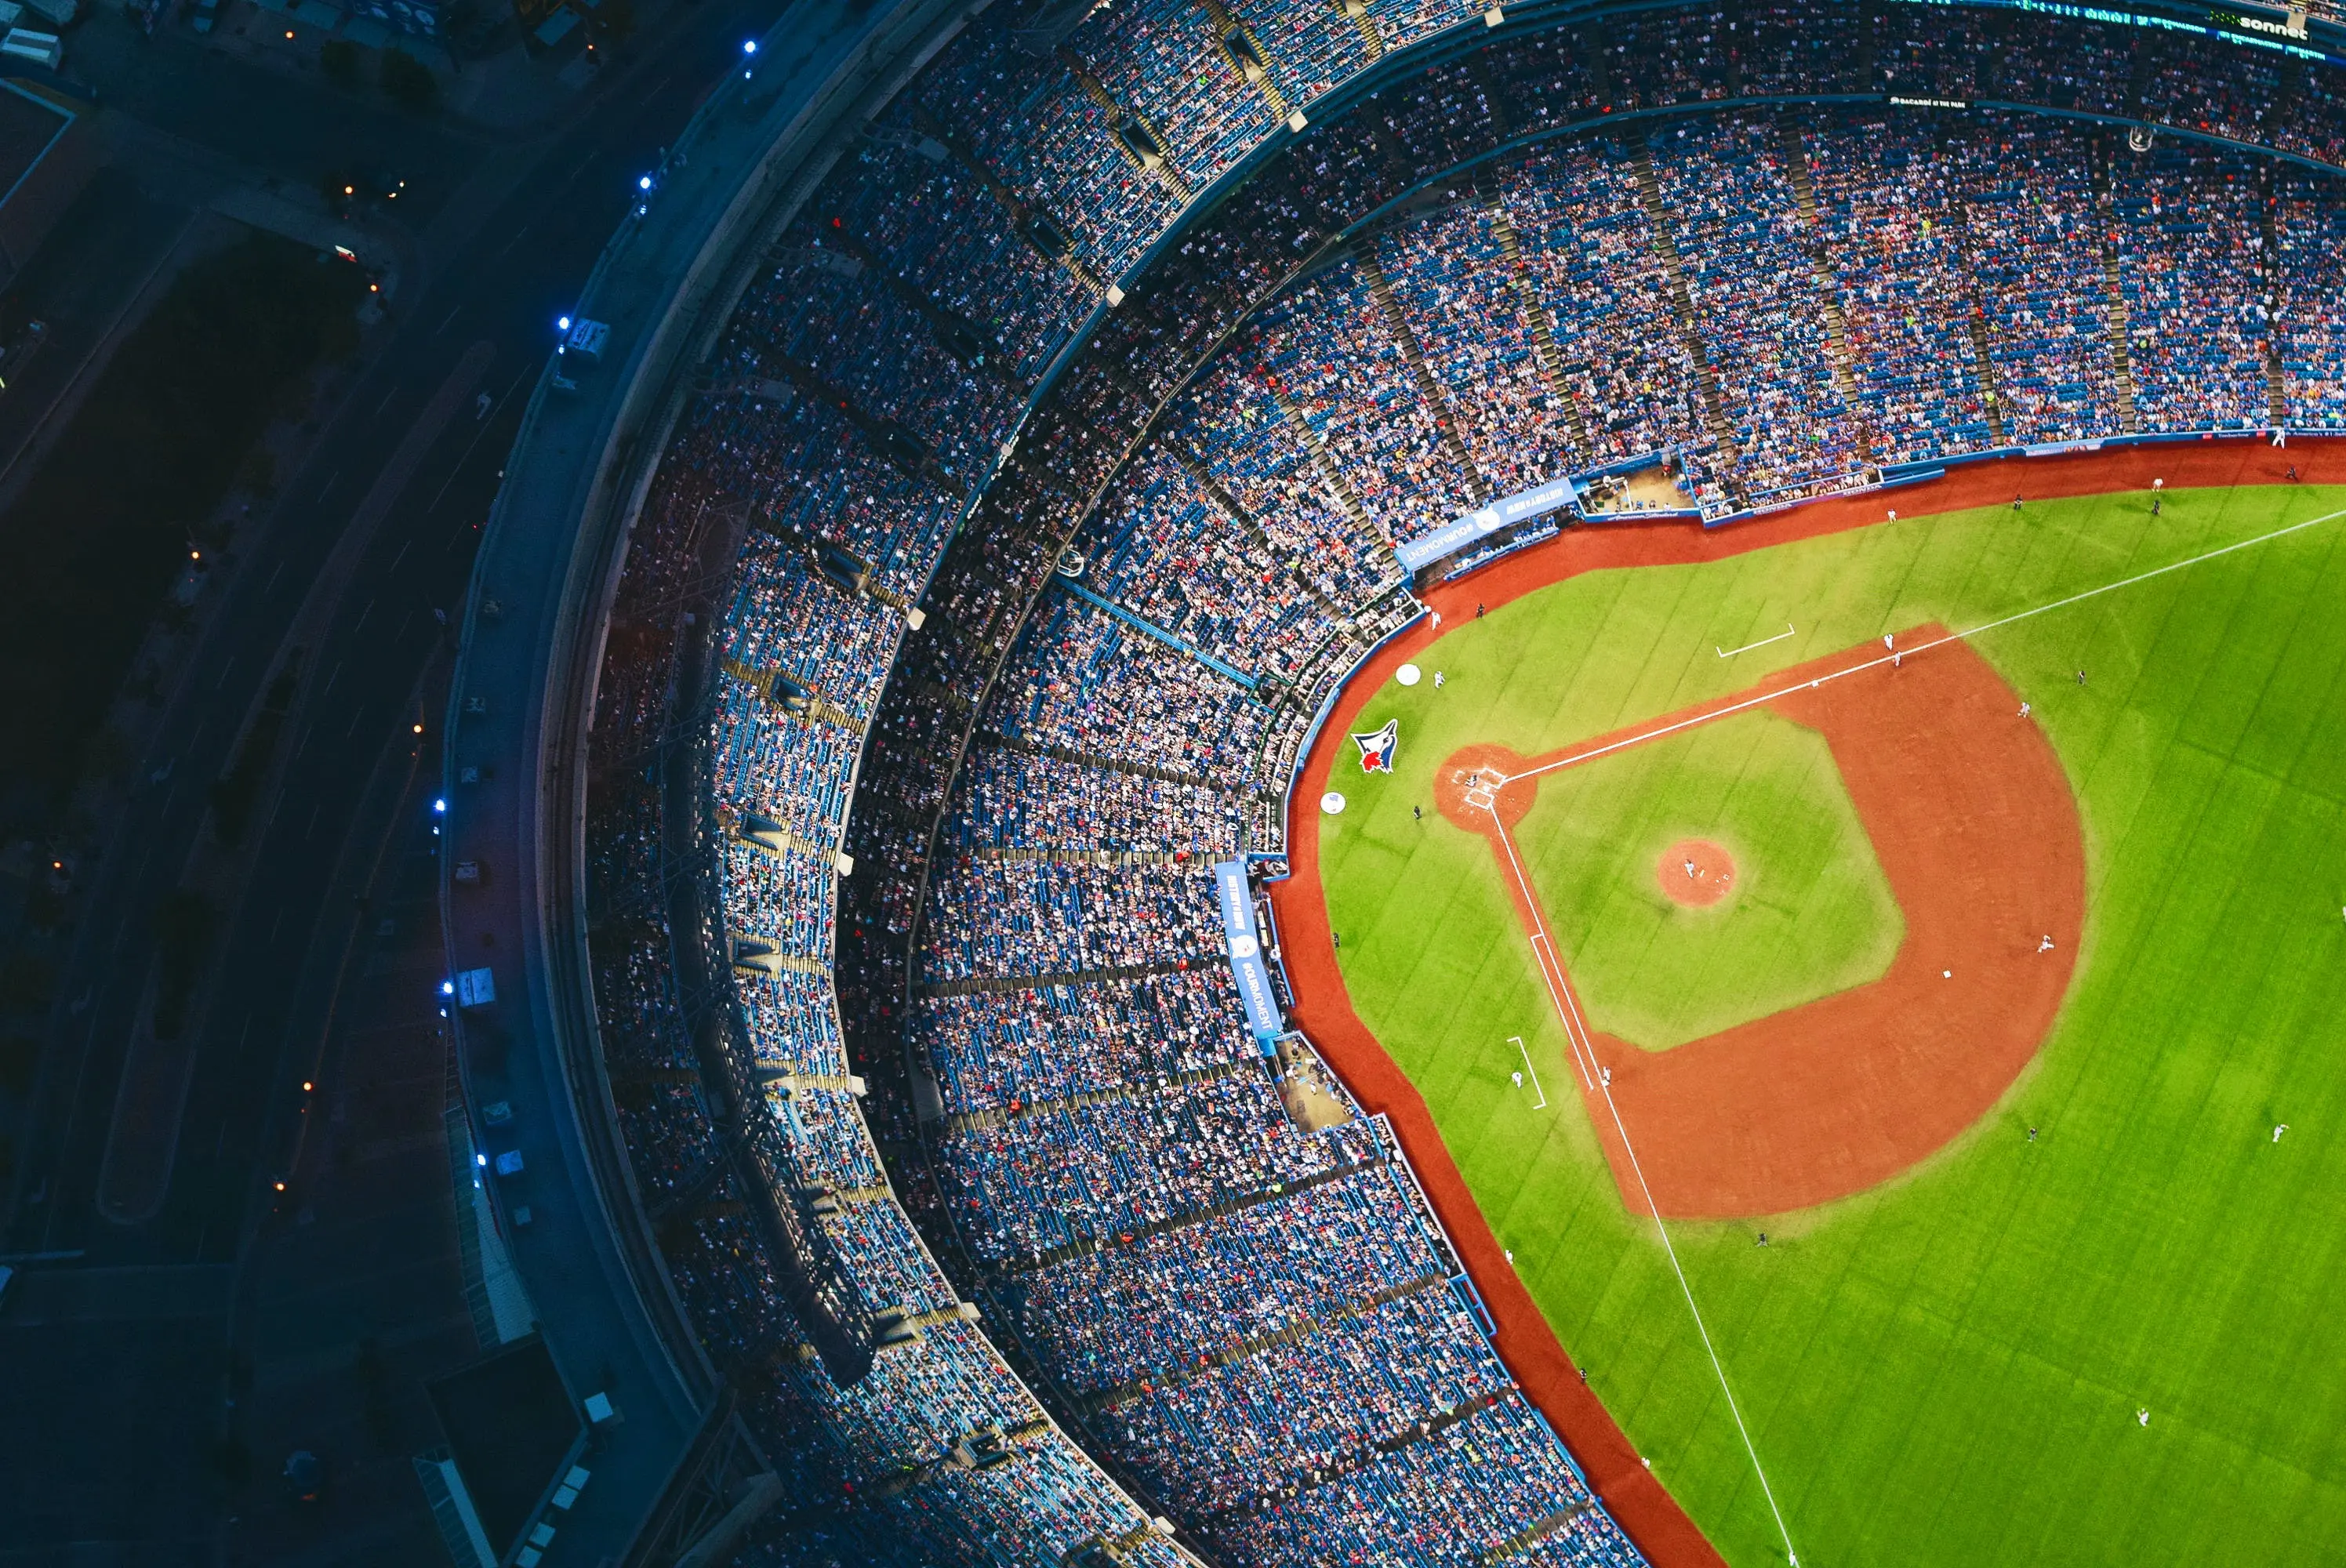 A crowded baseball stadium